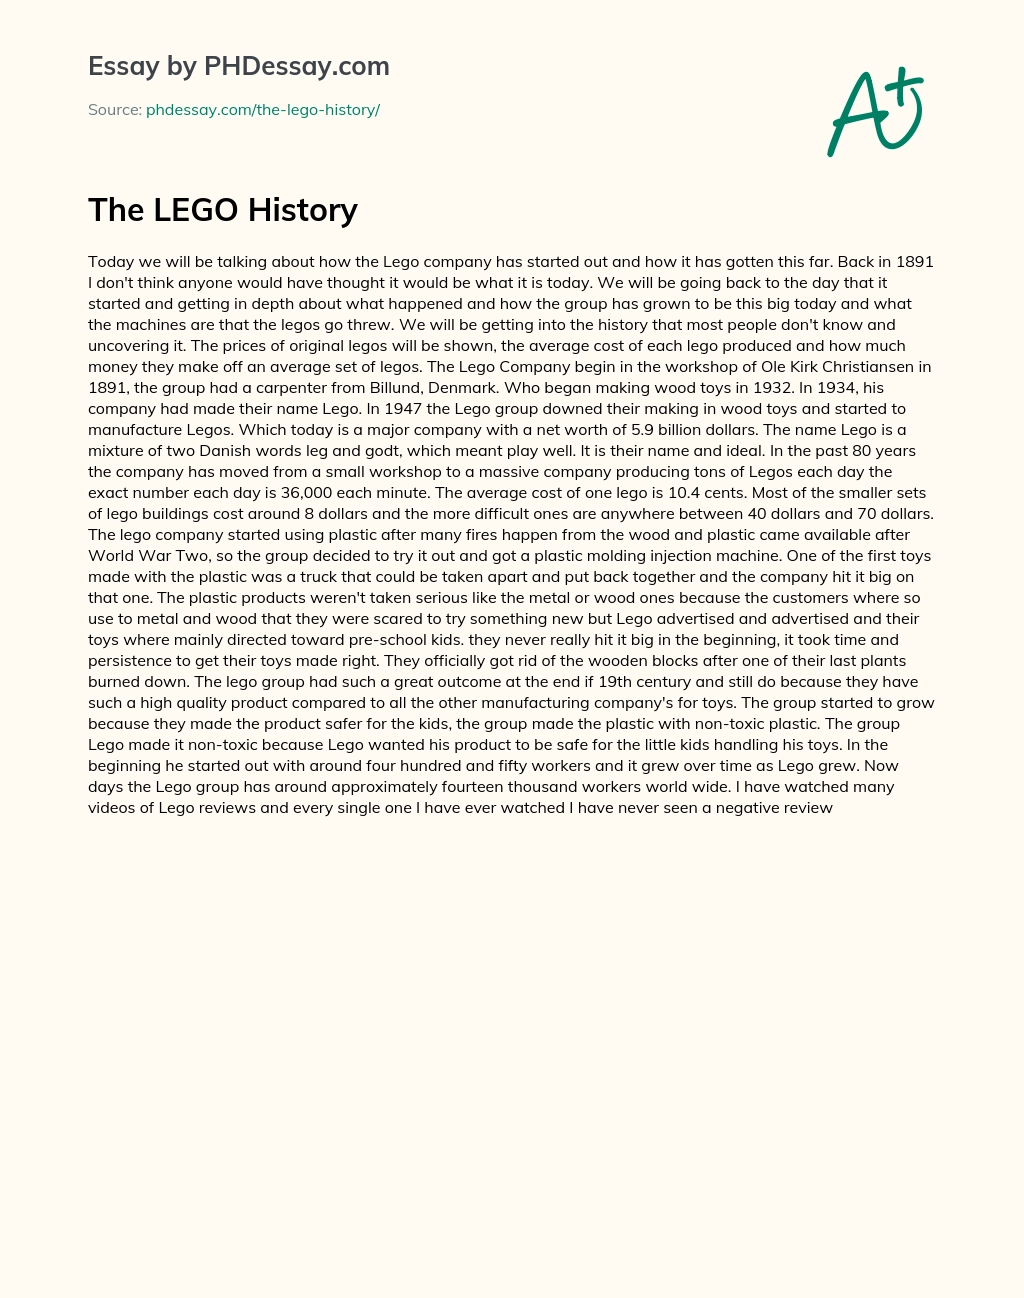 The LEGO History essay